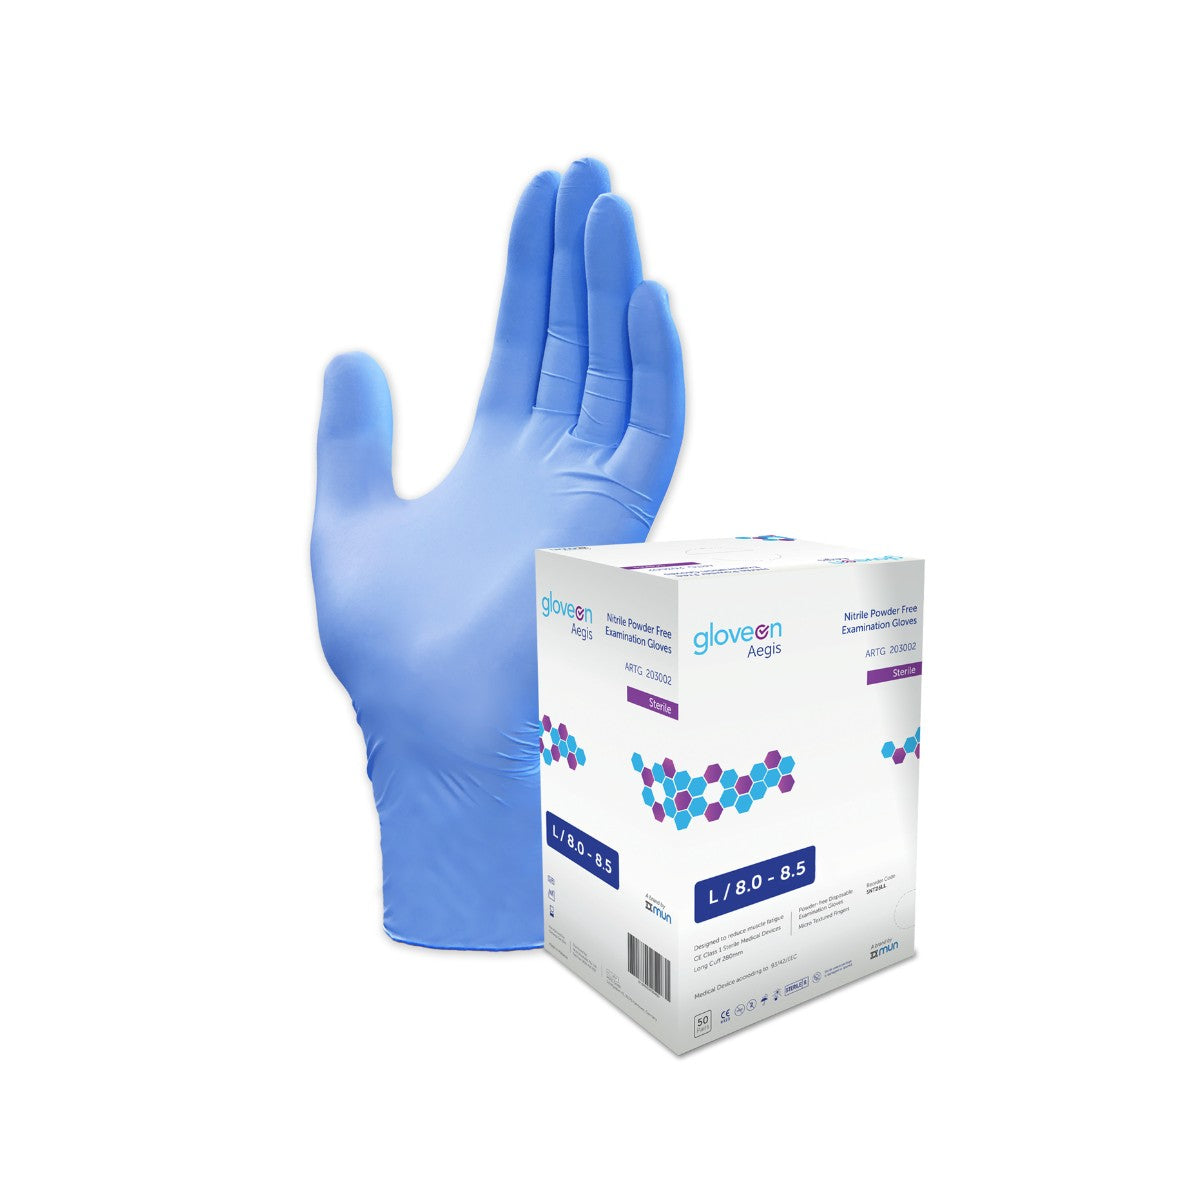 GloveOn® Aegis Nitrile Gloves SNT26 (Carton of 4 Boxes)